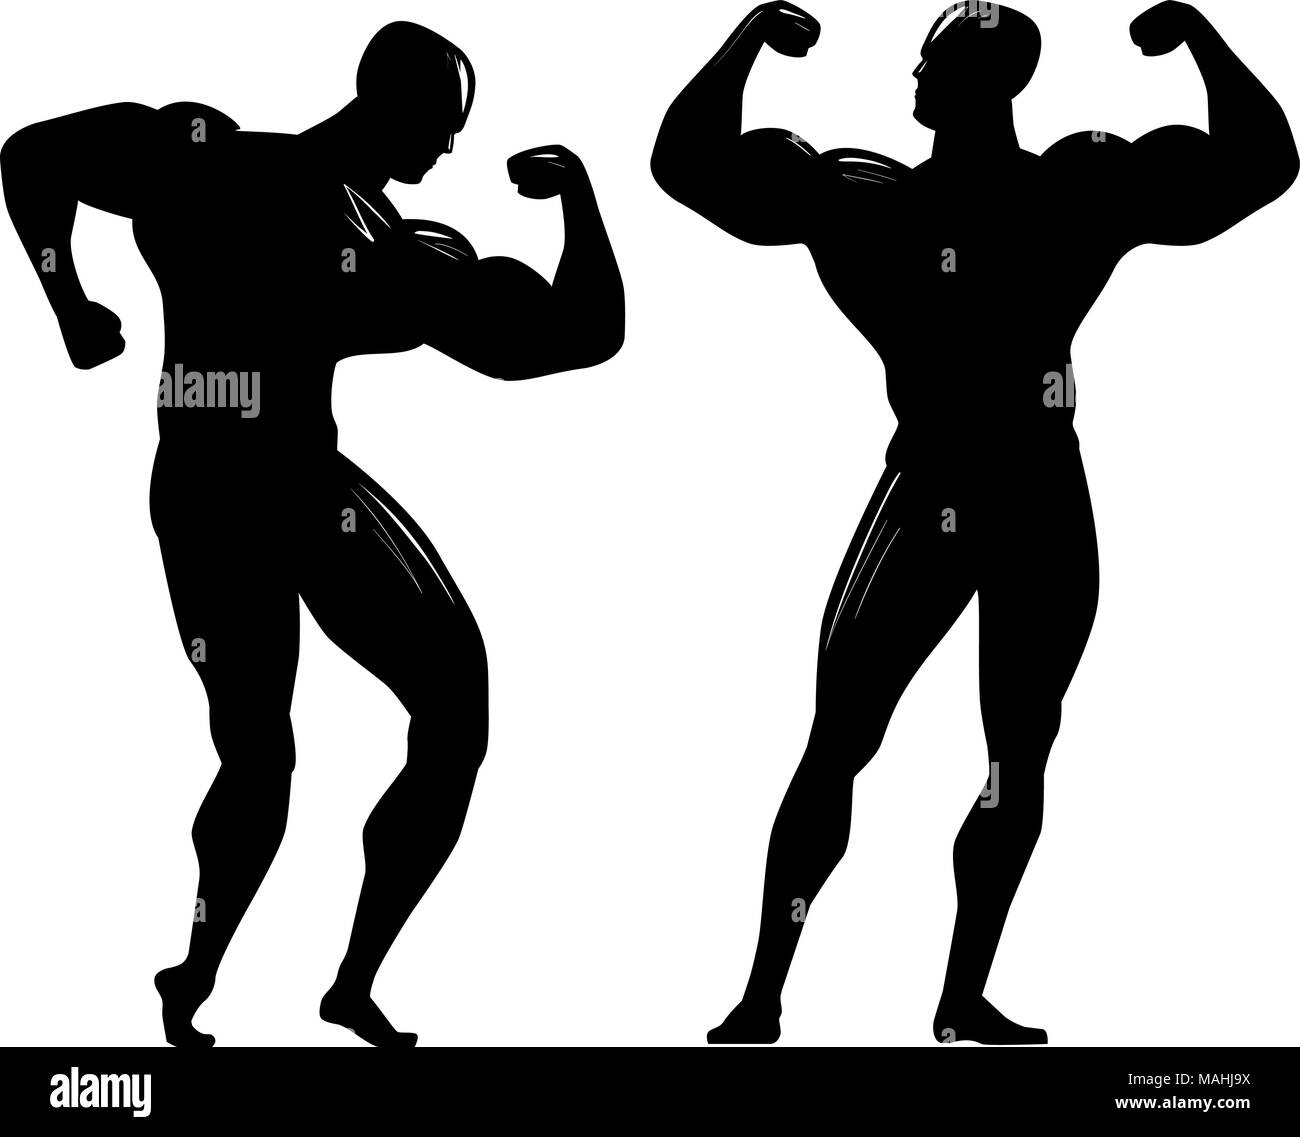 Allestitore silhouette. Palestra, bodybuilding, sport concept. Illustrazione Vettoriale Illustrazione Vettoriale